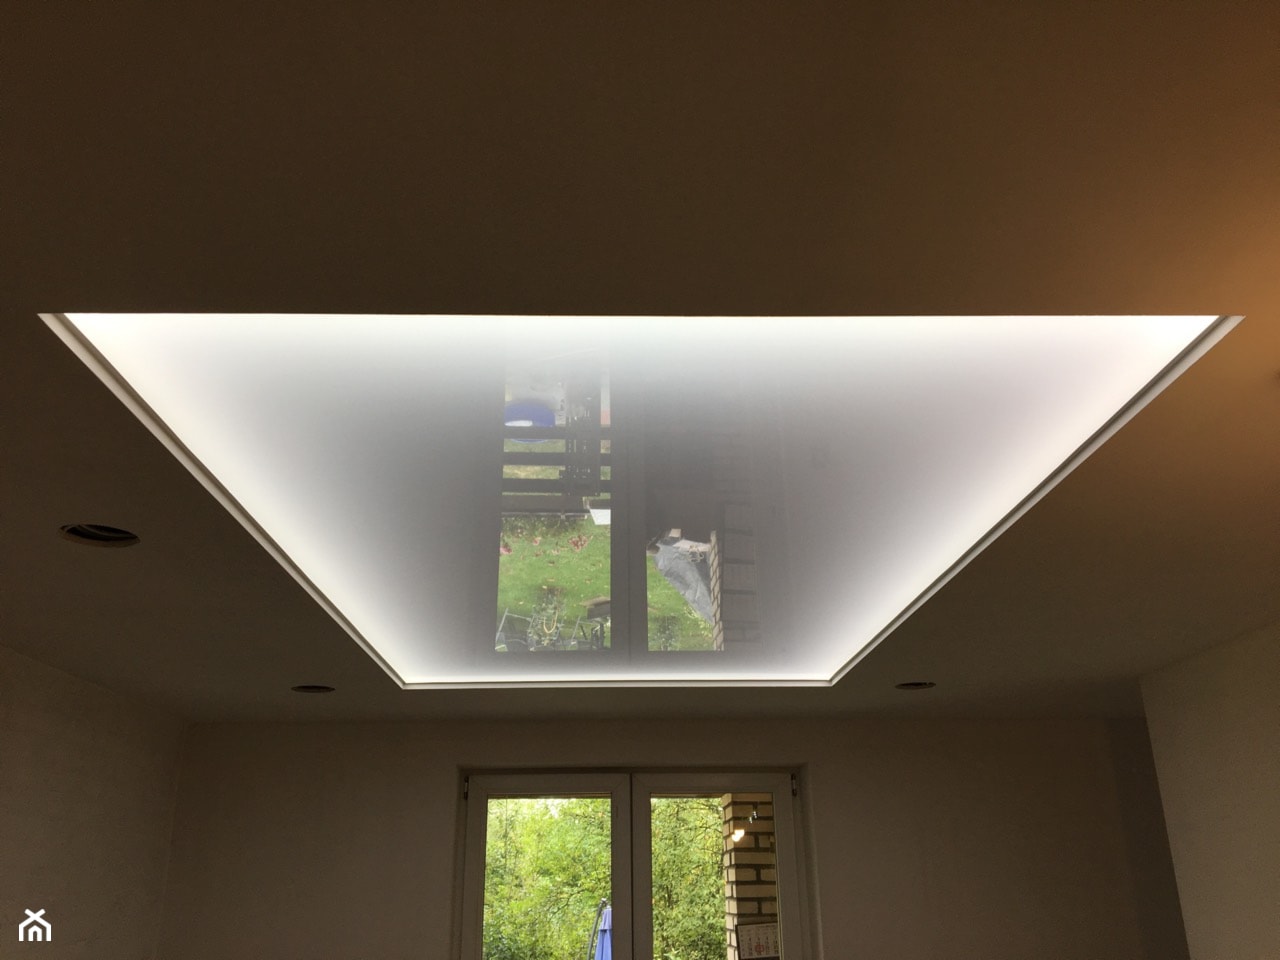 sufit napinany transparentny z oświetleniem LED po obwodzie - zdjęcie od Grupa Mirror Sufity Napinane - Homebook